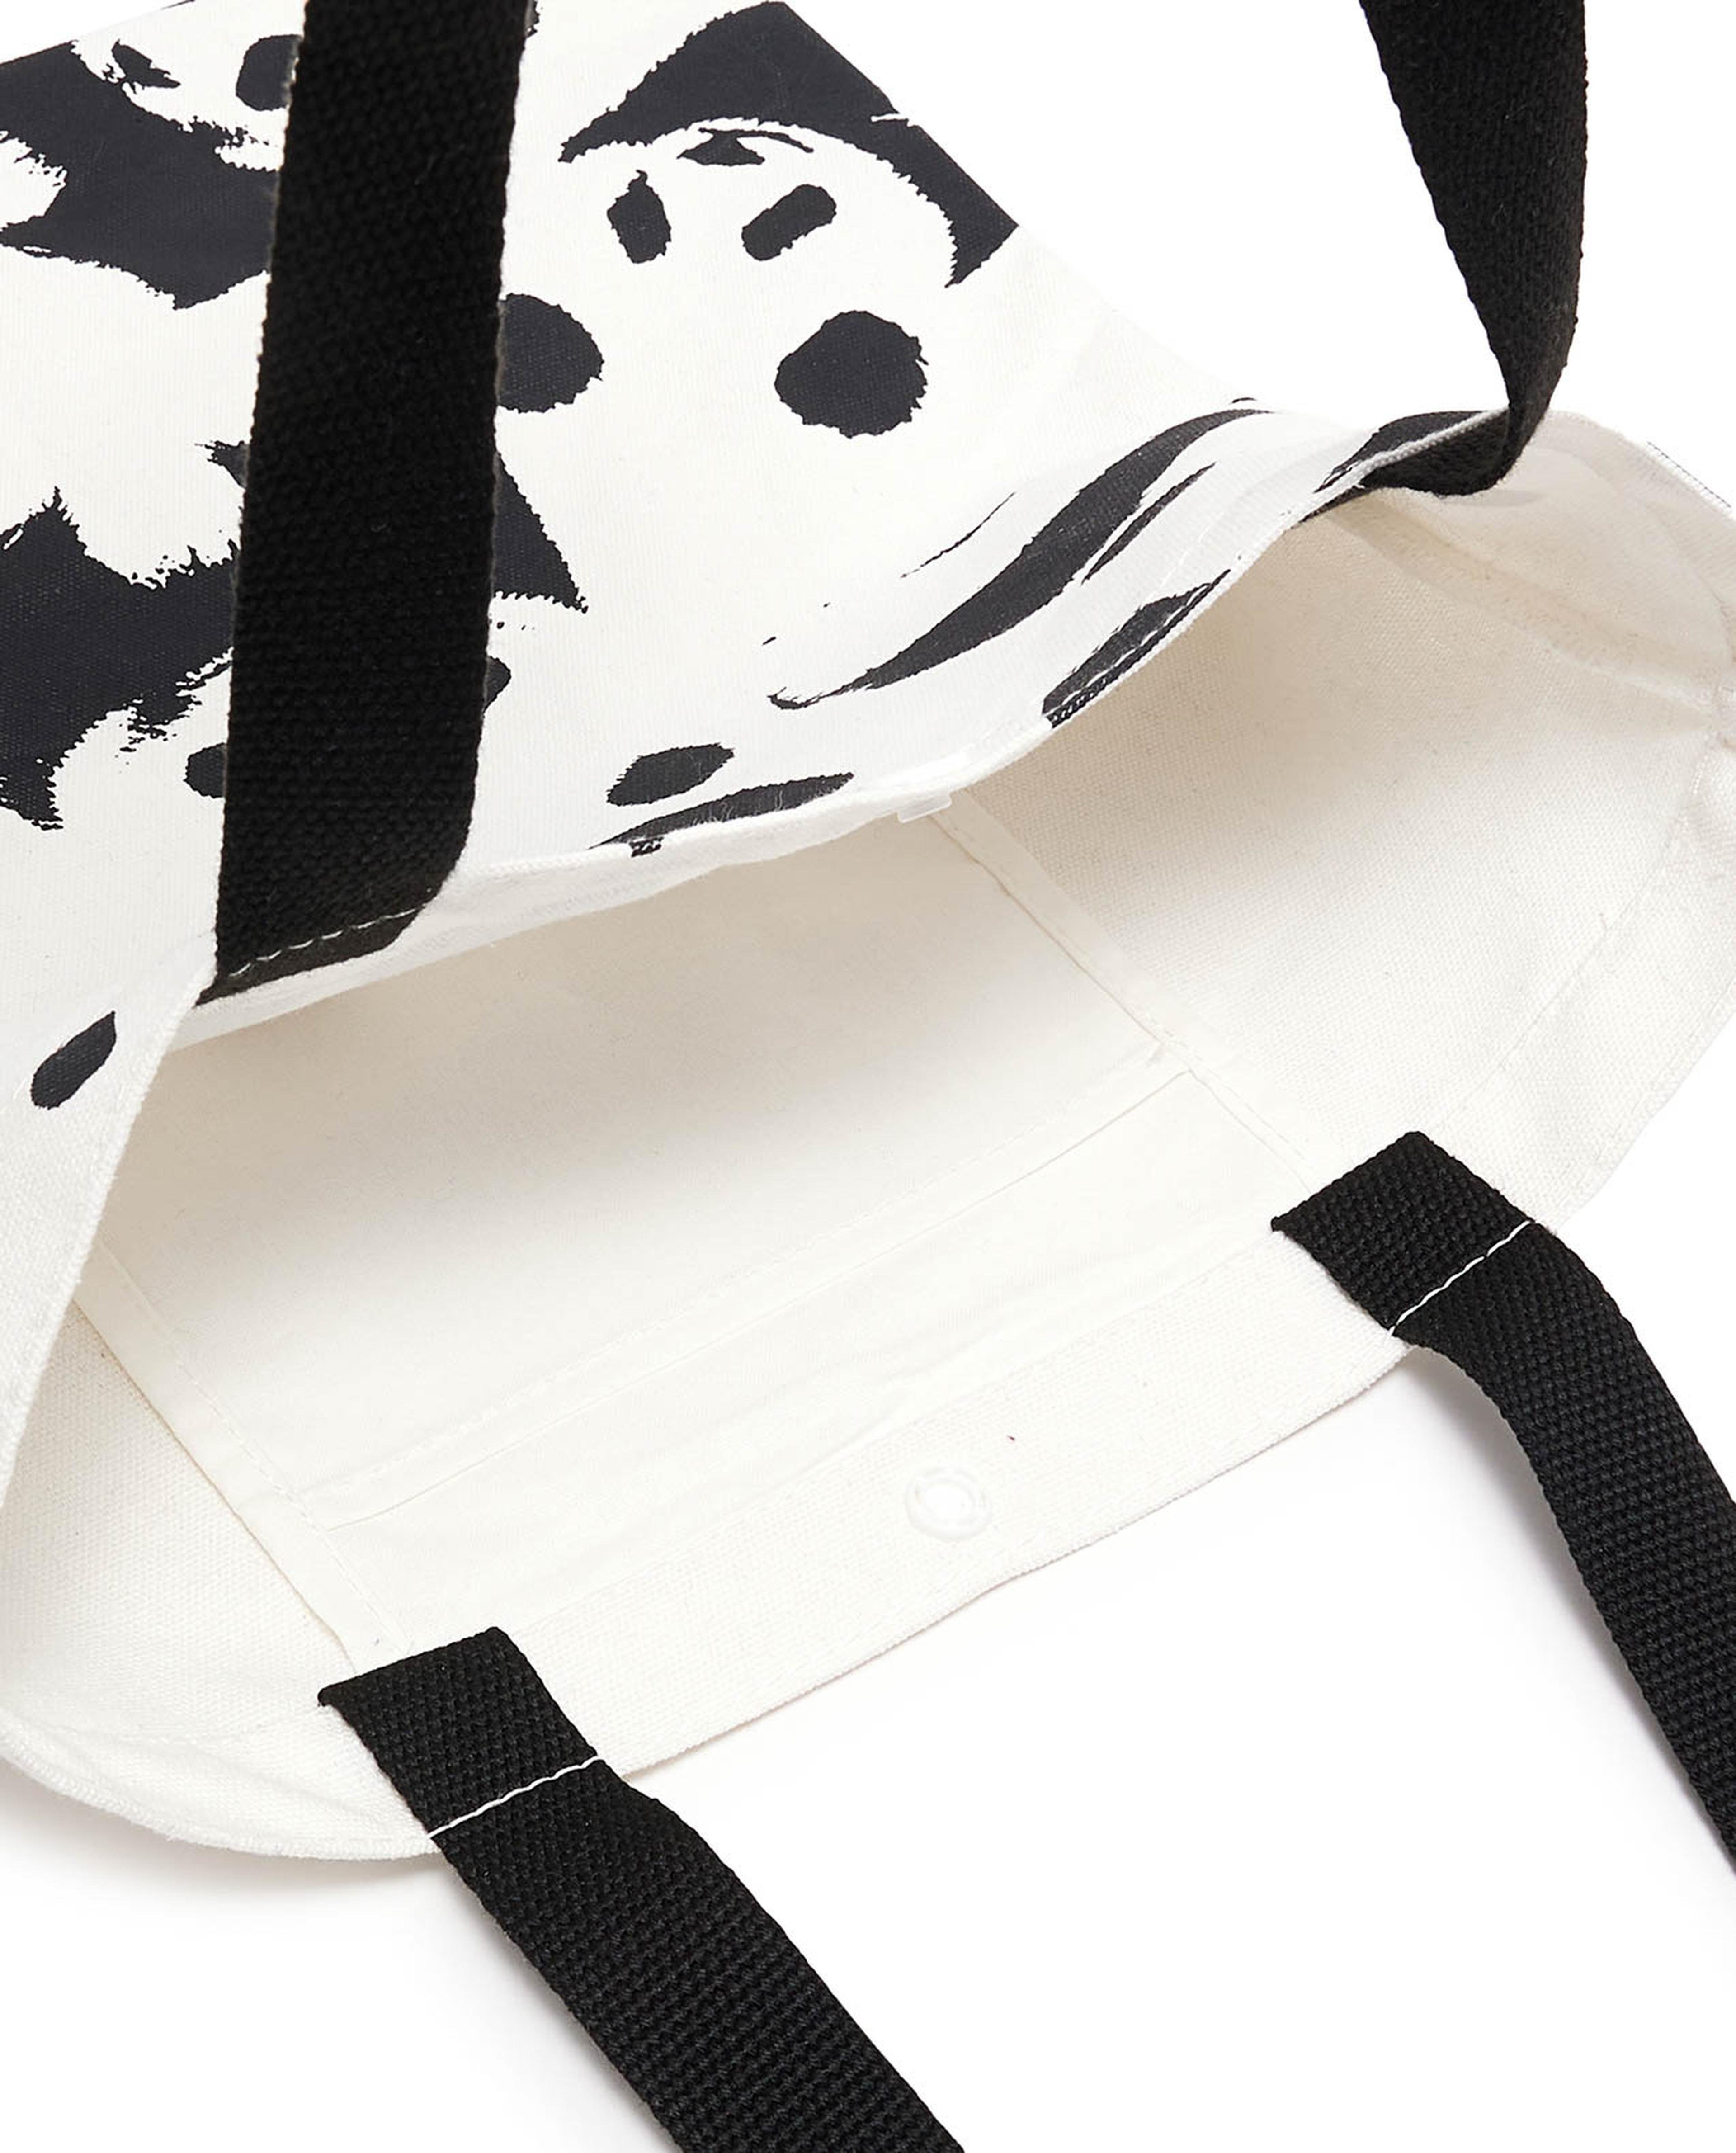 Panda Printed Canvas Shoulder Bag